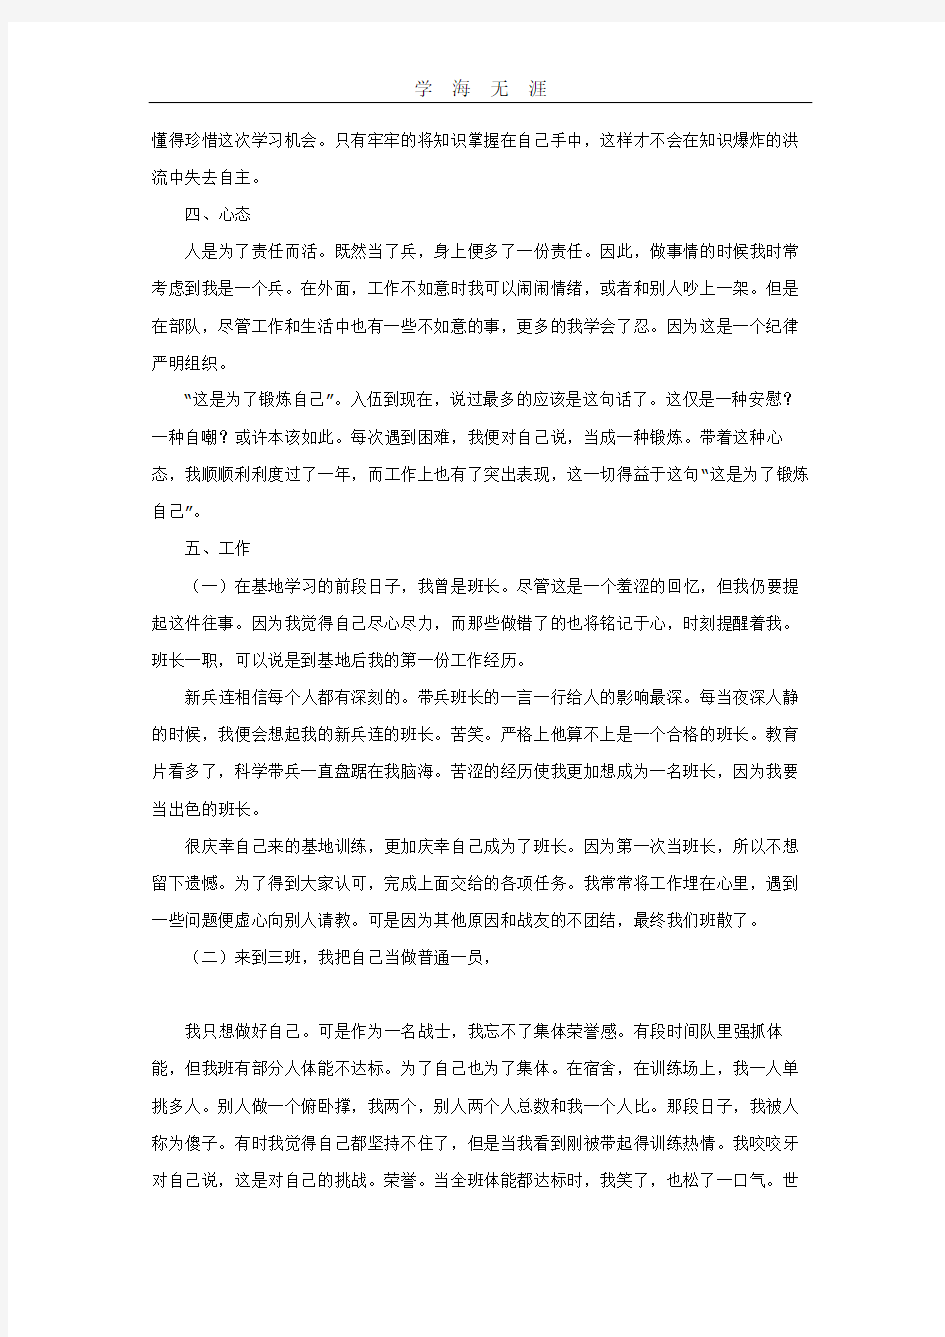 新兵思想汇报.pdf